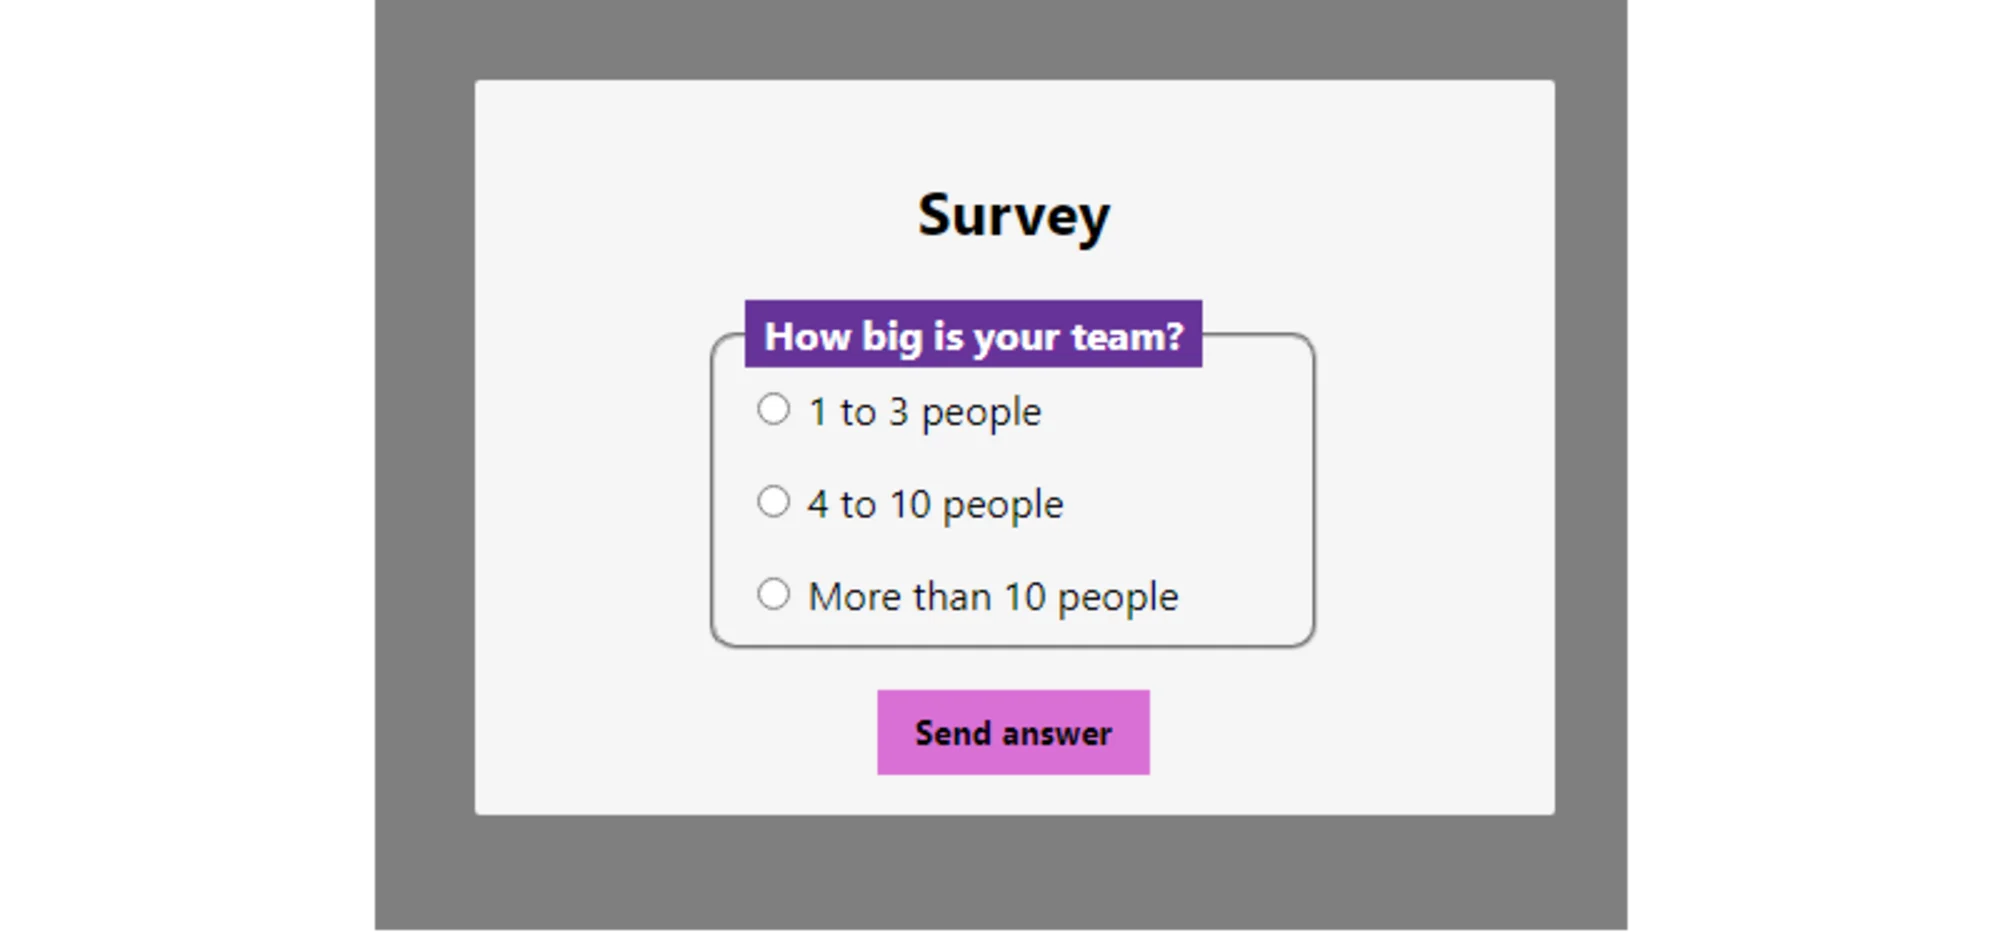 Une modale avec le titre 'Survey' et une question disant 'Combien de personnes compte votre équipe?' et trois options de réponse sous forme de boutons radio: 1 à 3 personnes, 4 à 10 personnes, et plus de 10 personnes. En-dessous, il y a un bouton avec un intitulé 'Envoyer la réponse'